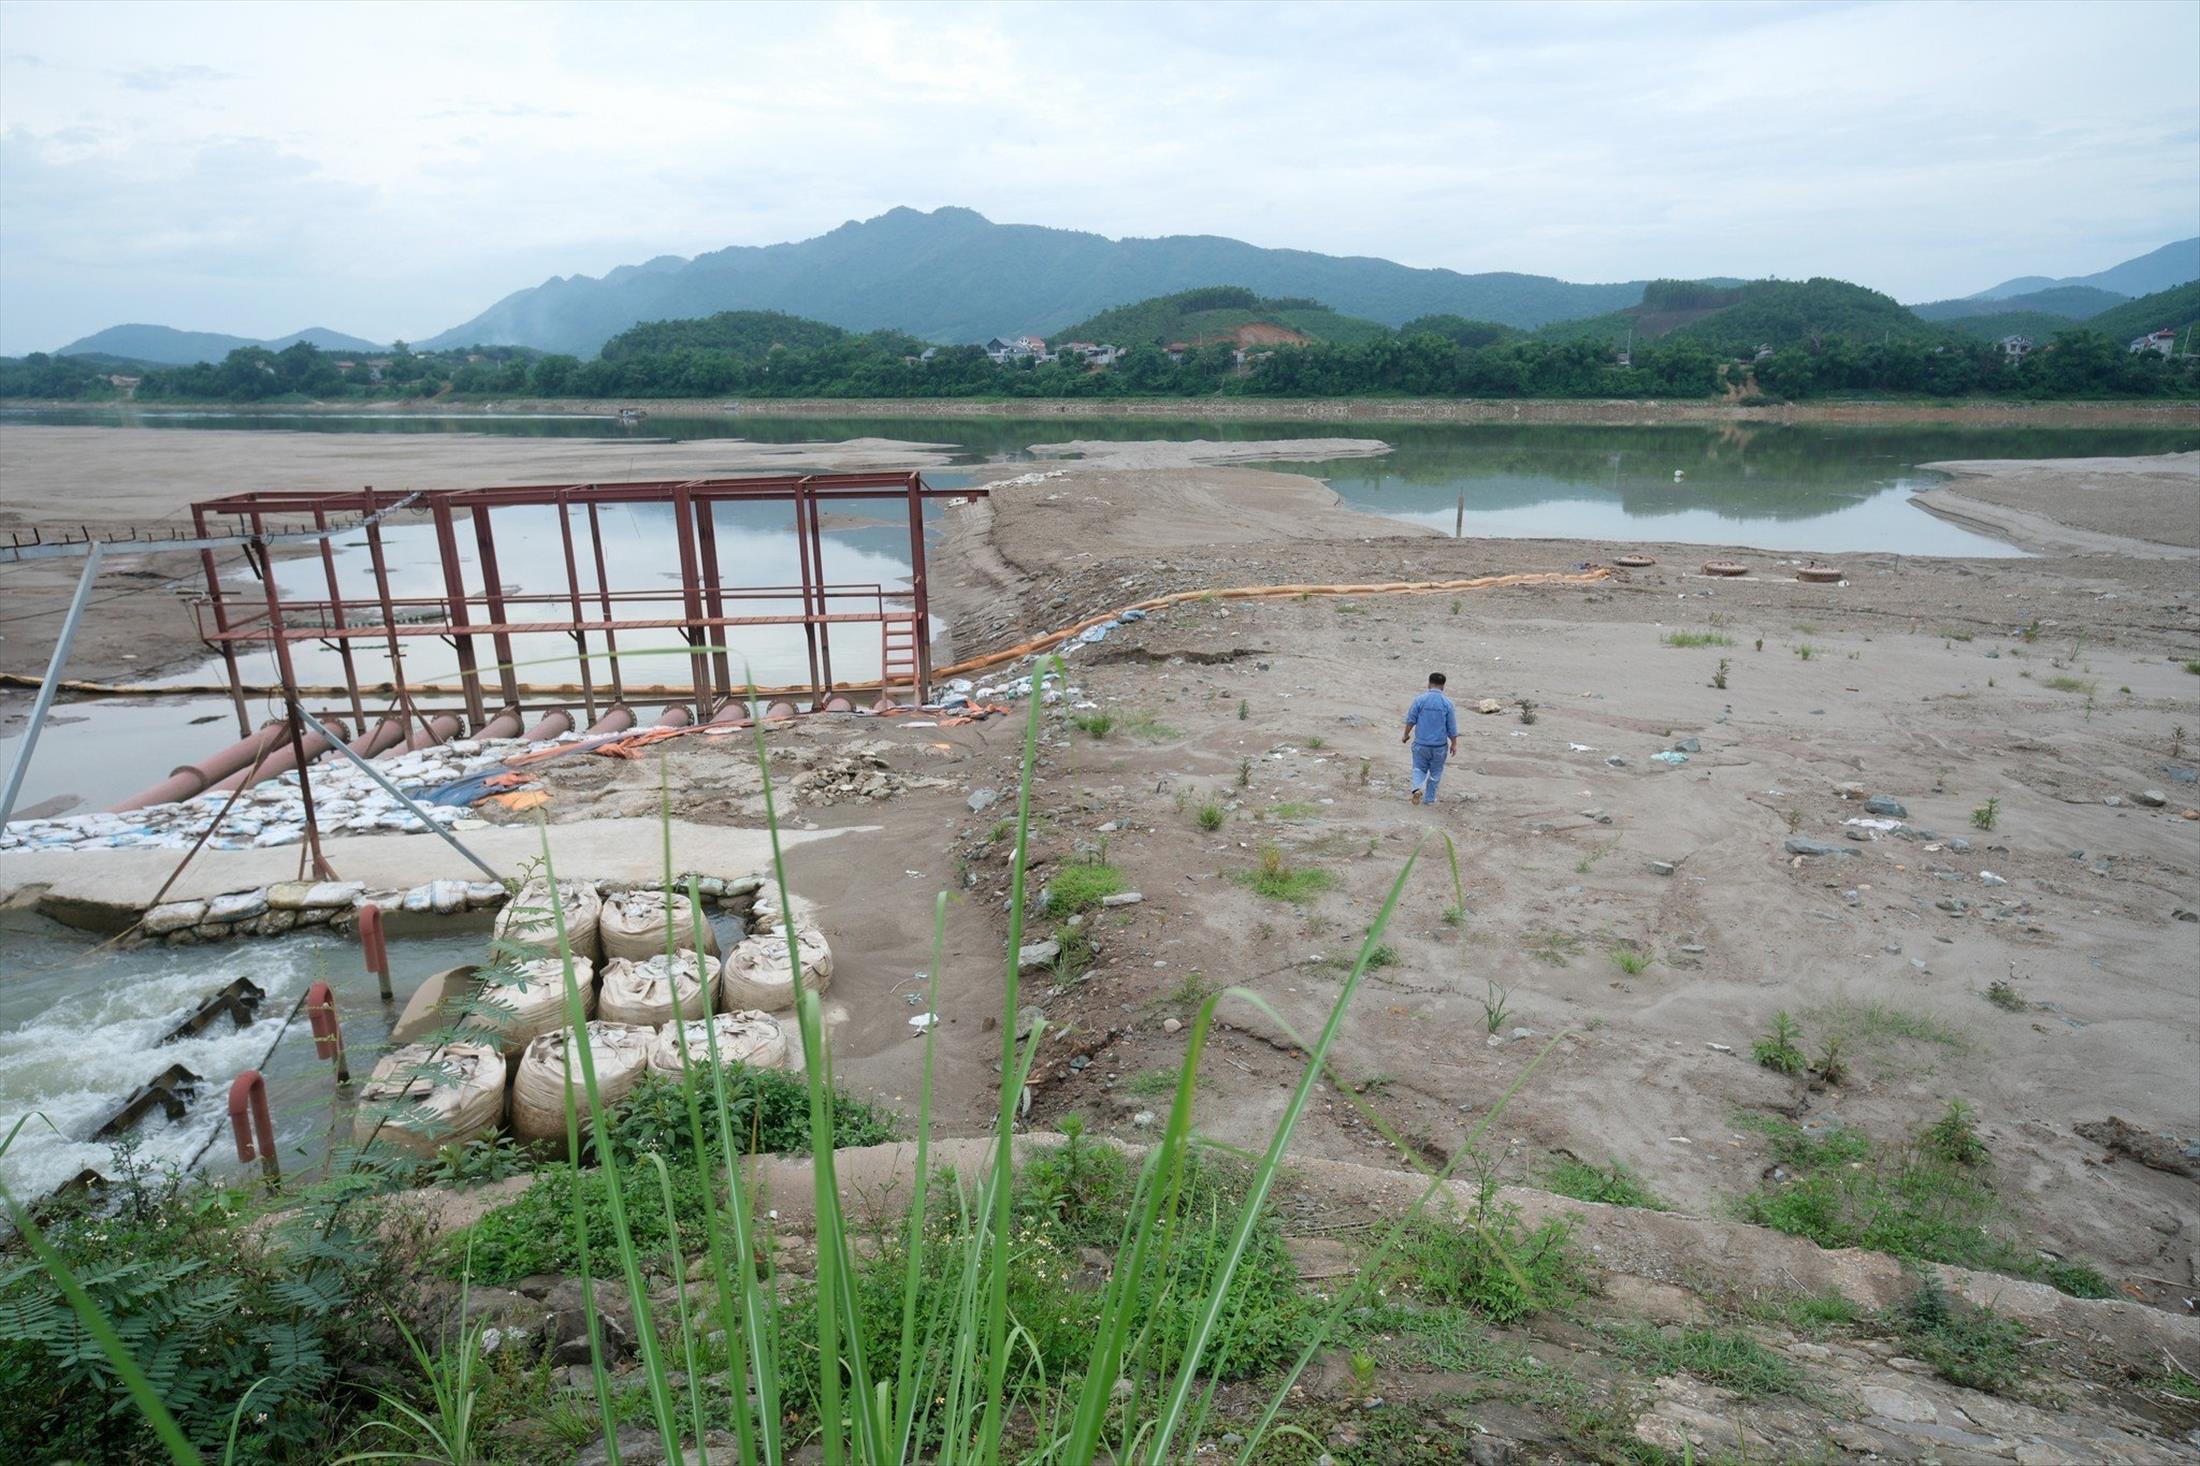 Một số khu vực tại Hà Nội vẫn phải cấp, cắt nước luân phiên